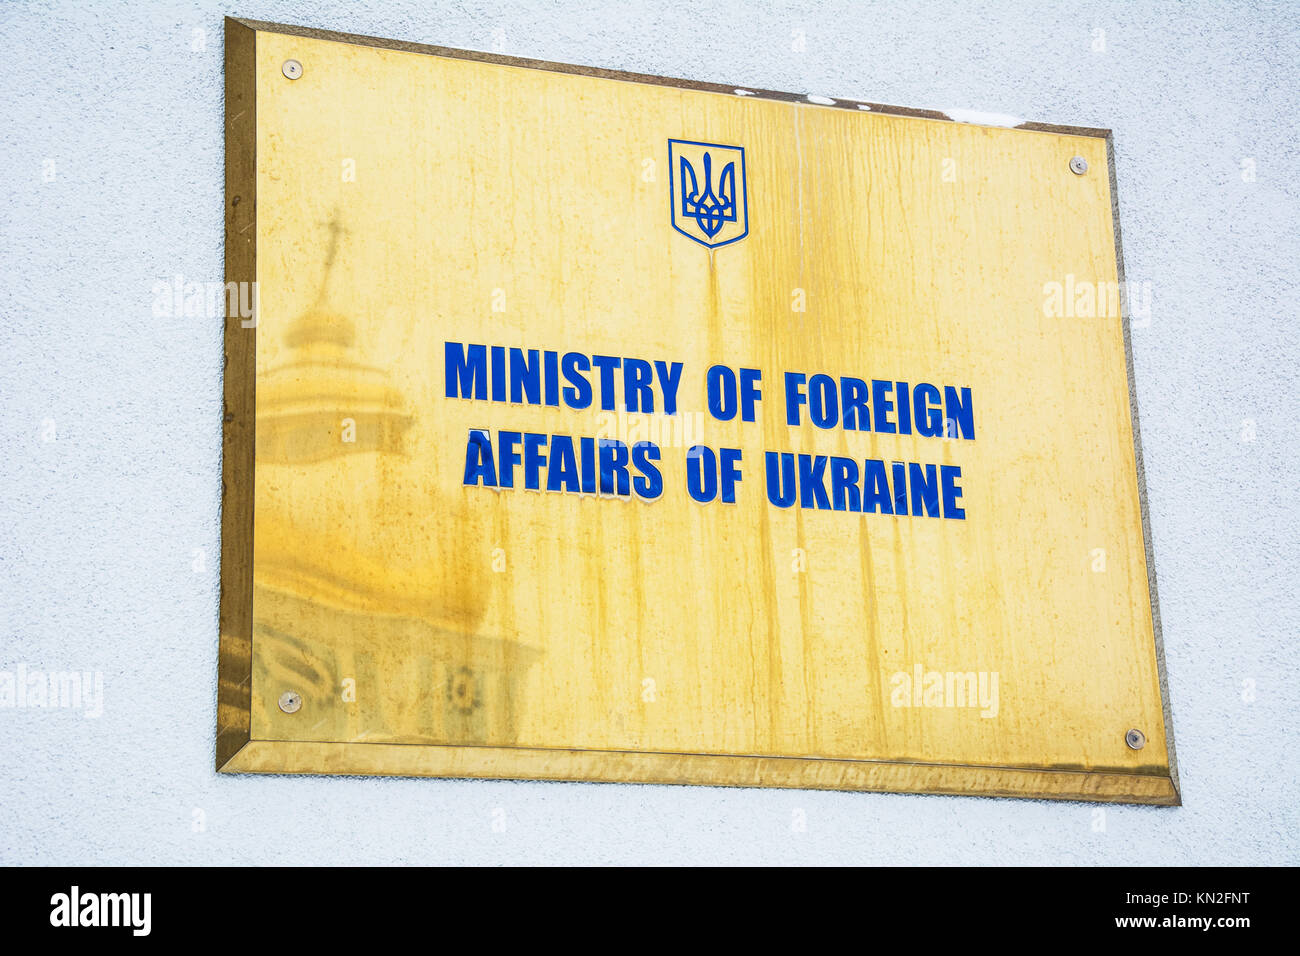 KIEV, UKRAINE - 12 décembre 2016 : un signe du ministère des Affaires étrangères de l'Ukraine à l'édifice du ministère des Affaires étrangères ukrainien. Le dôme de la mi Banque D'Images